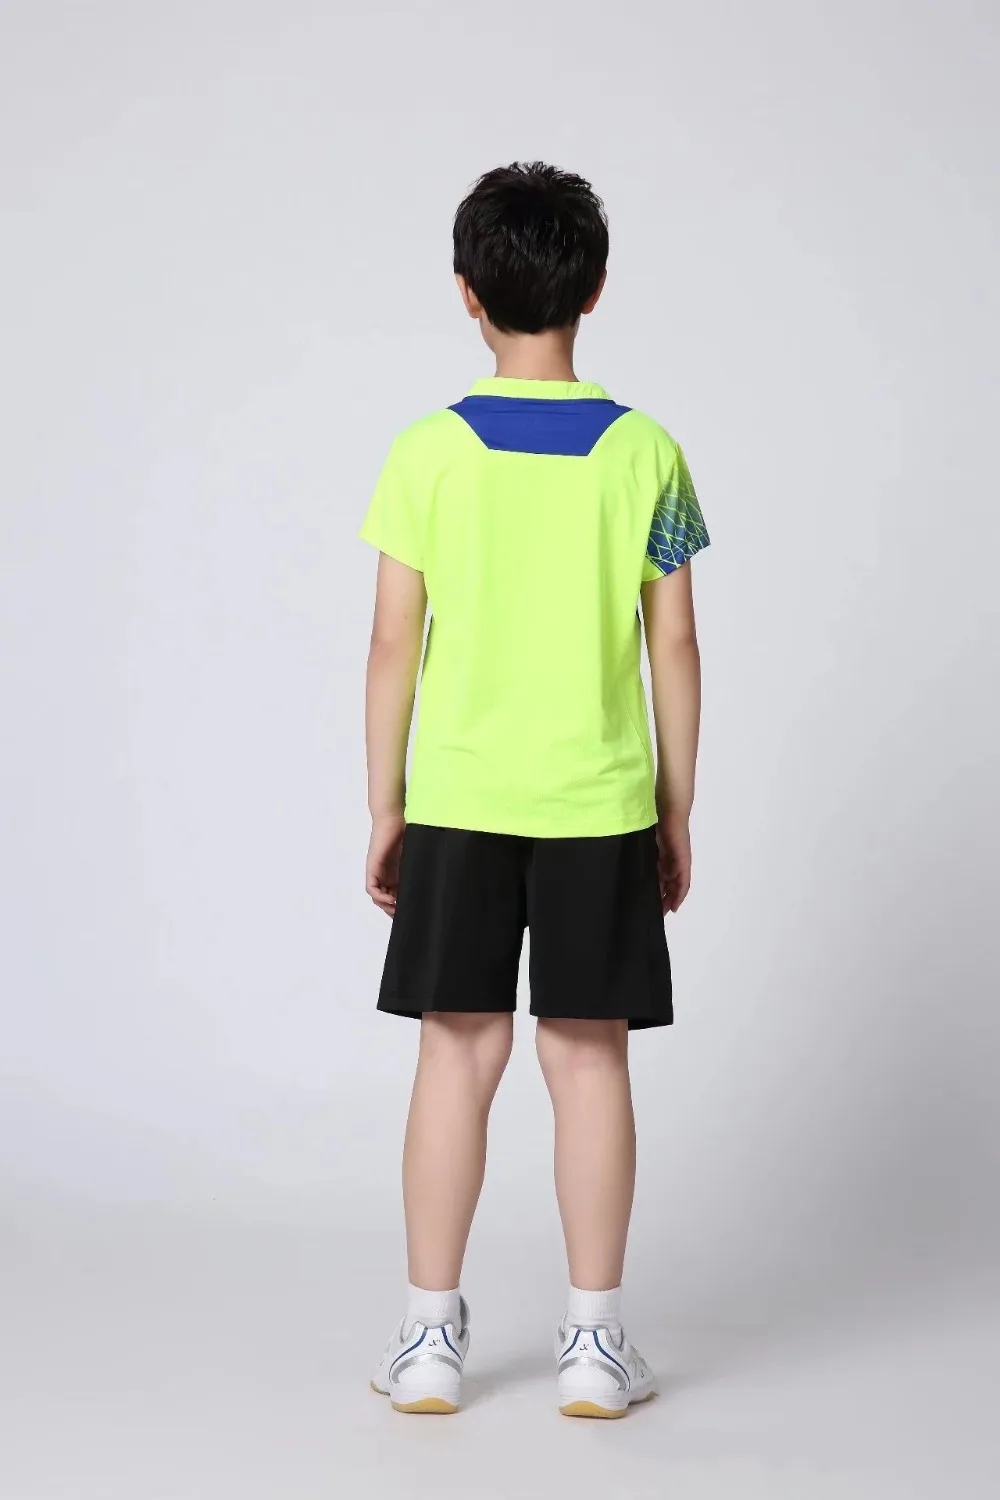 Новая Студенческая футболка для бадминтона, для соревнований, быстросохнущая удобная спортивная одежда, рубашки и шорты, синяя одежда для тенниса, XS-3XL, VF09